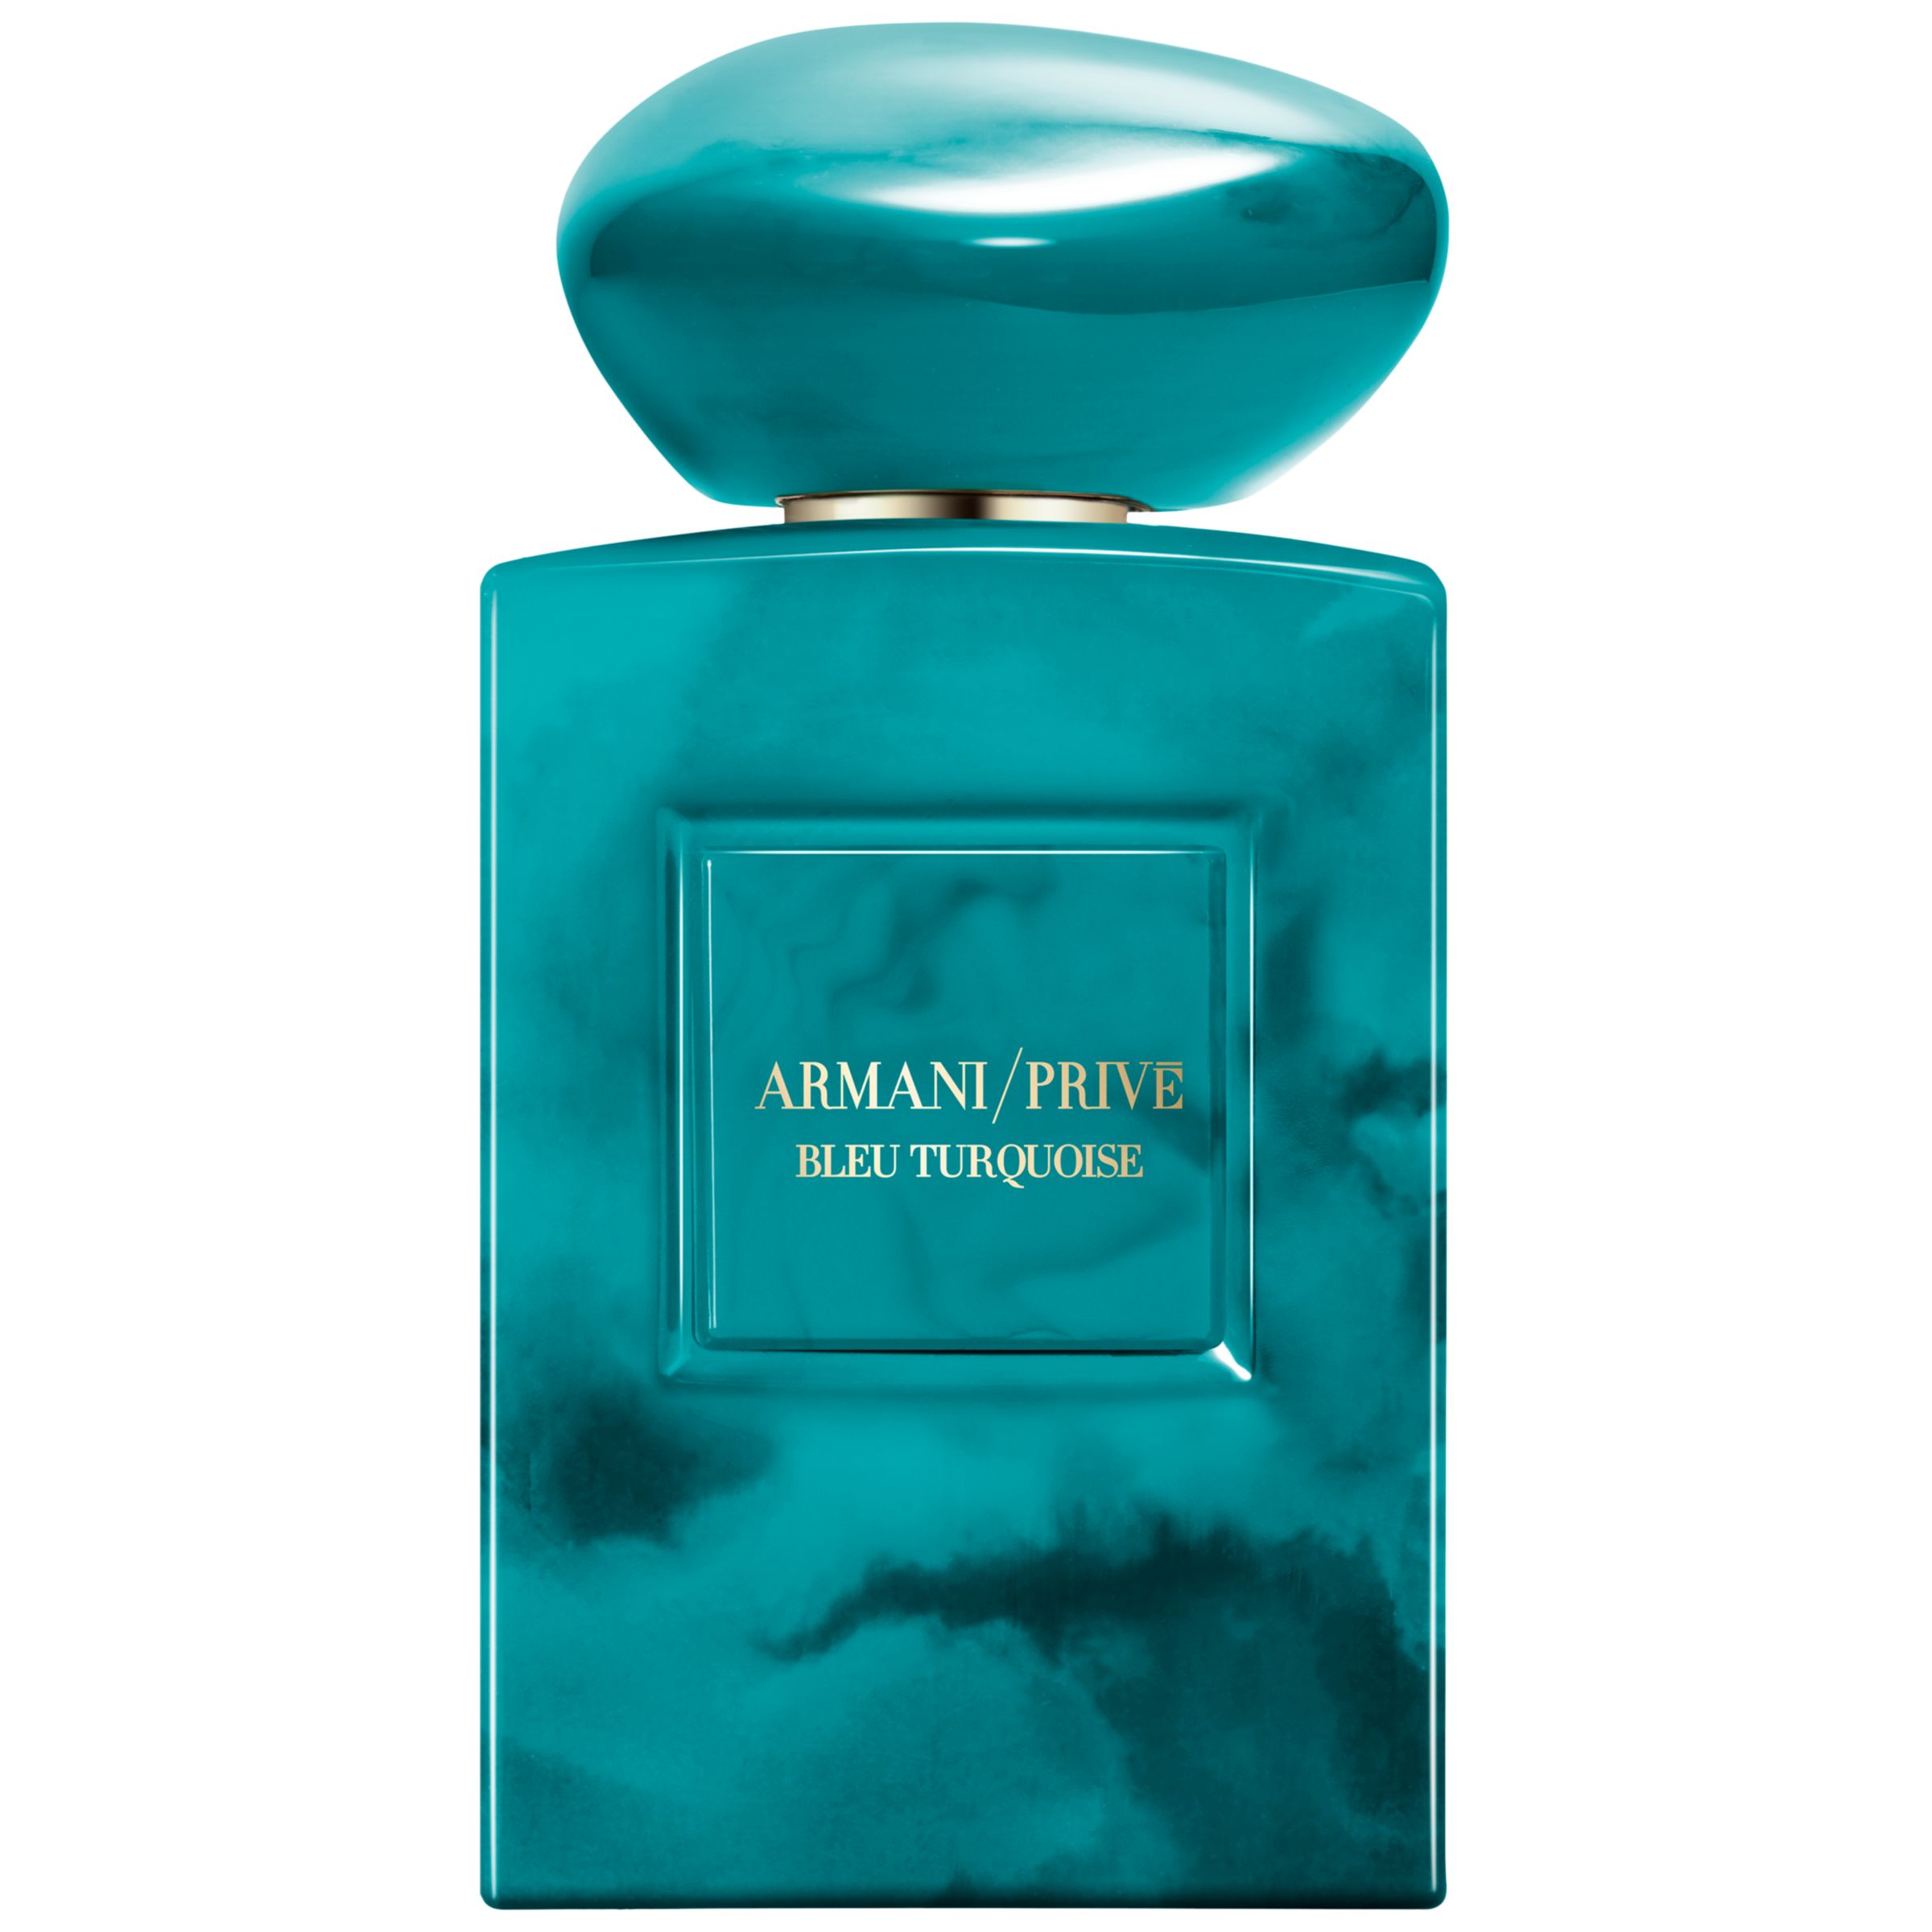 Giorgio Armani / Privé Bleu Turquoise Eau de Parfum, 100ml 1